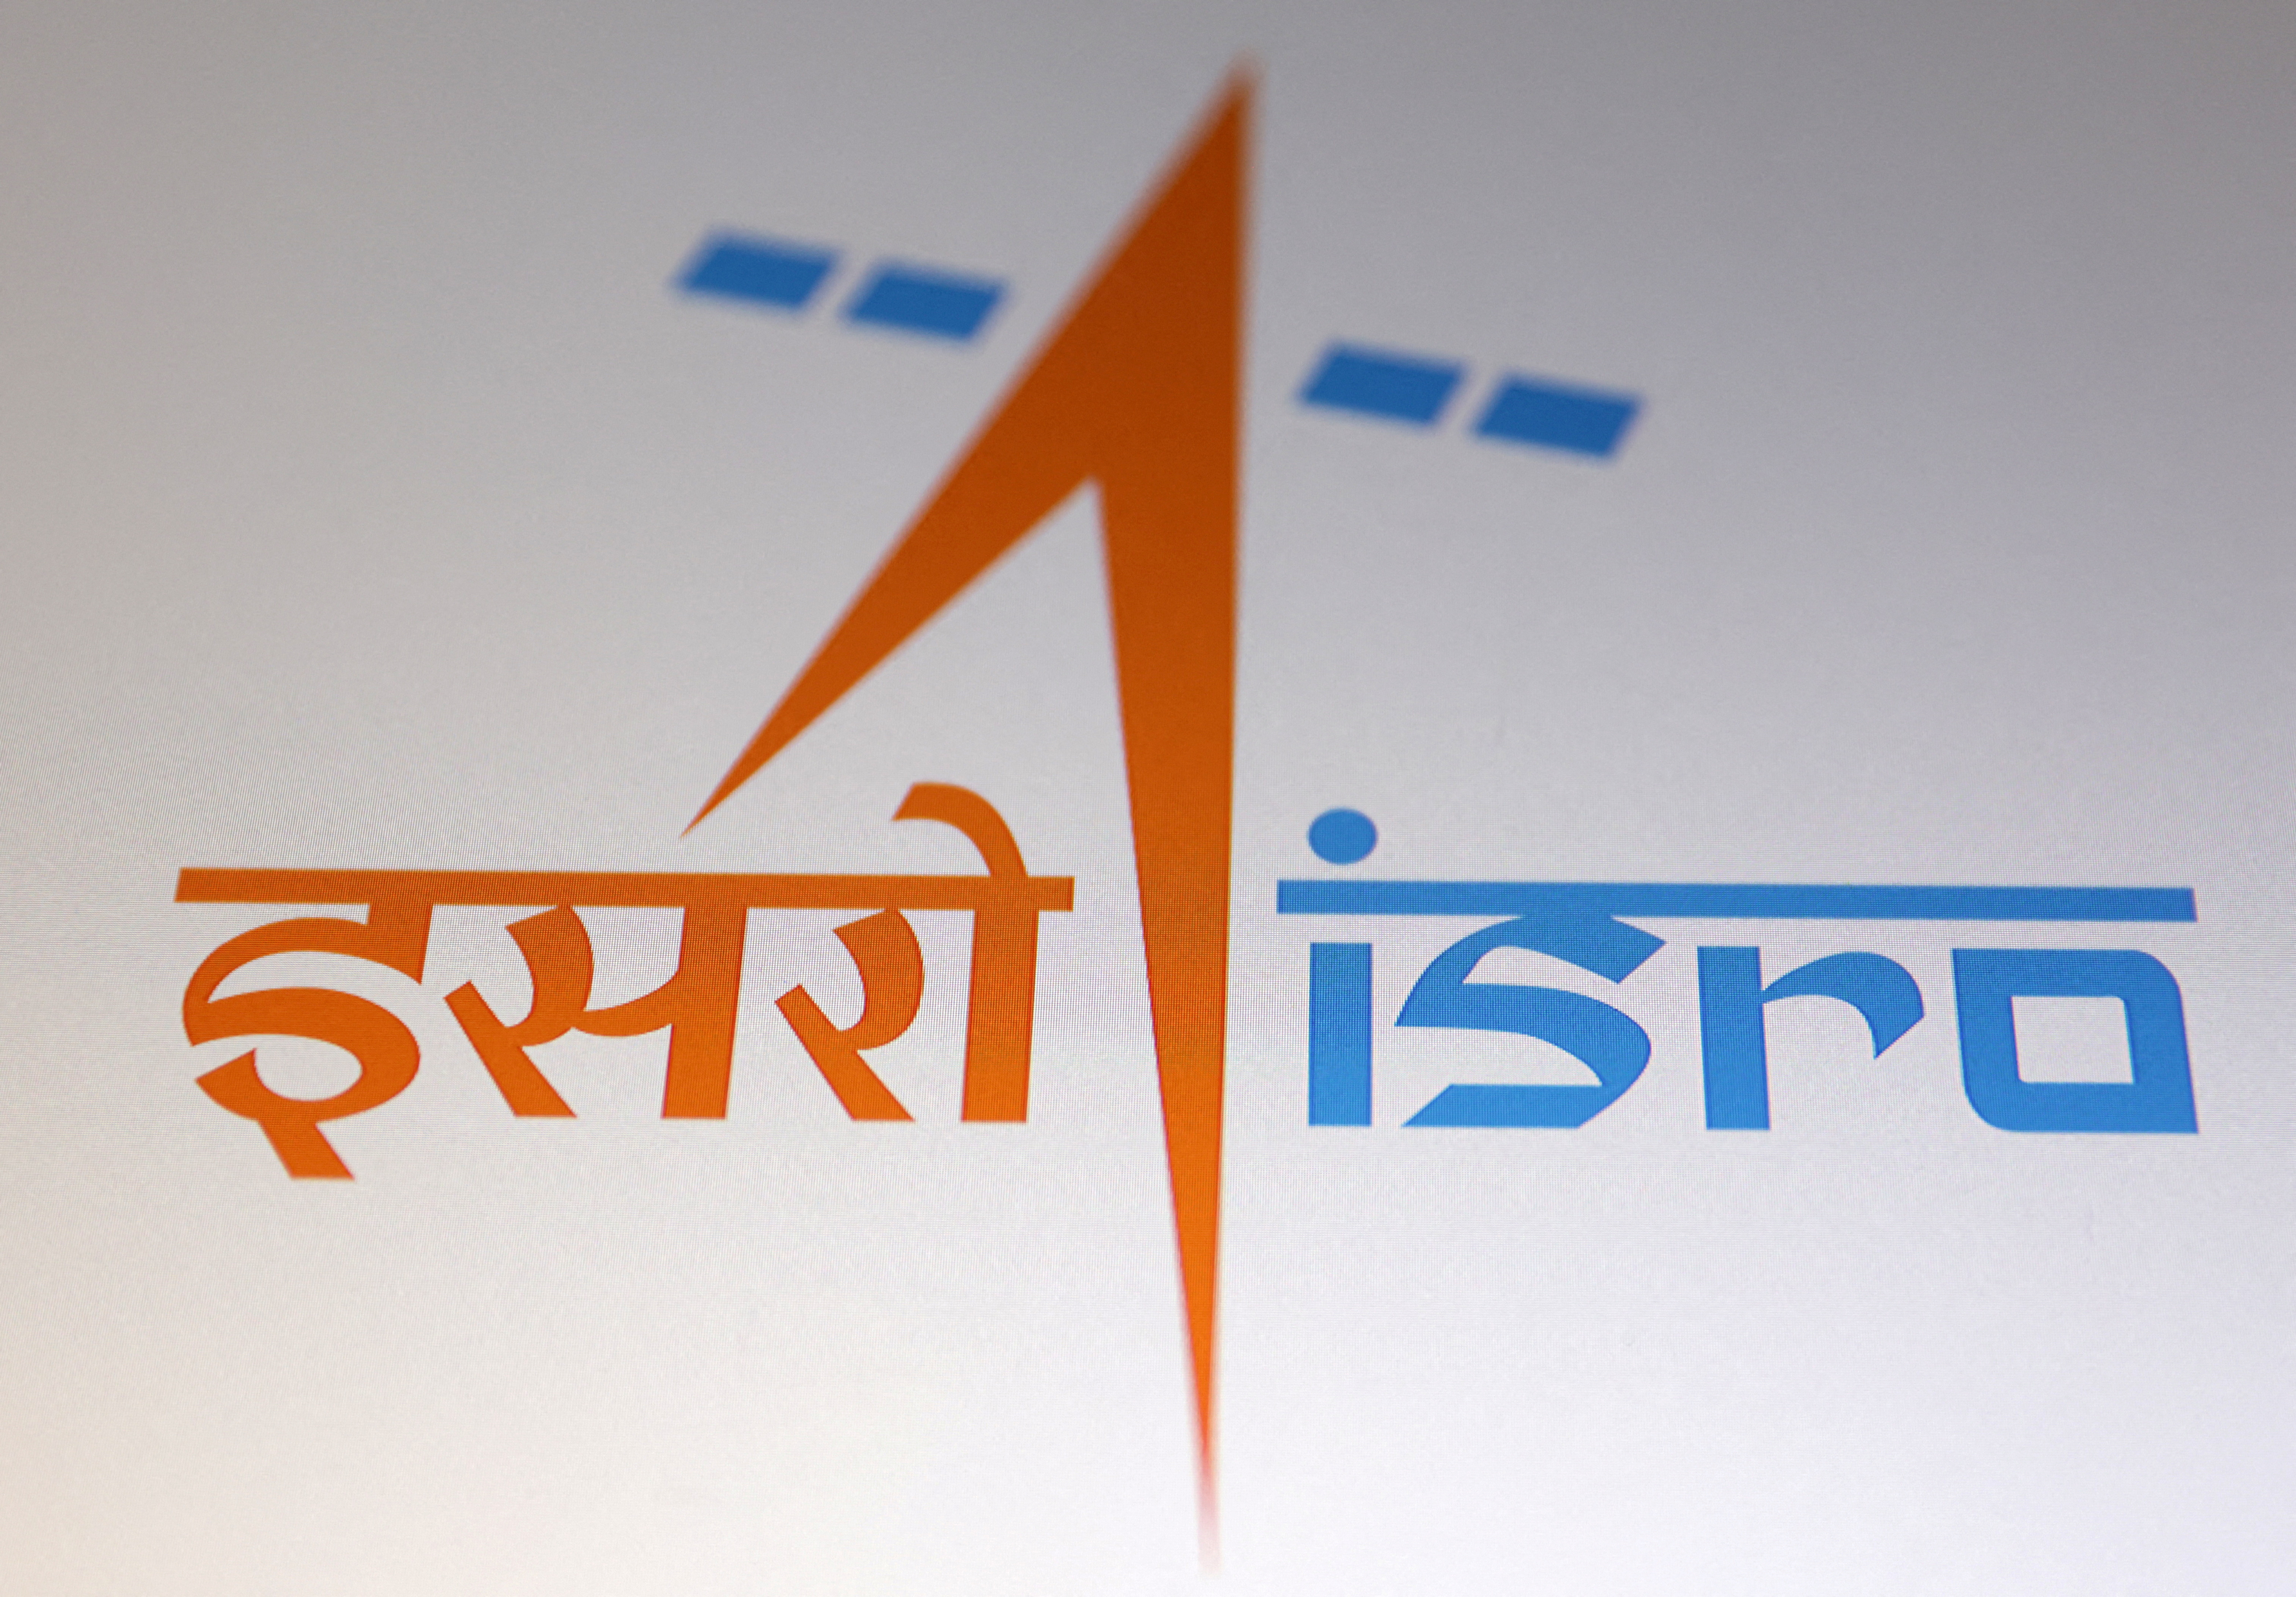 Imaginea prezintă sigla Indian Space Research Organization